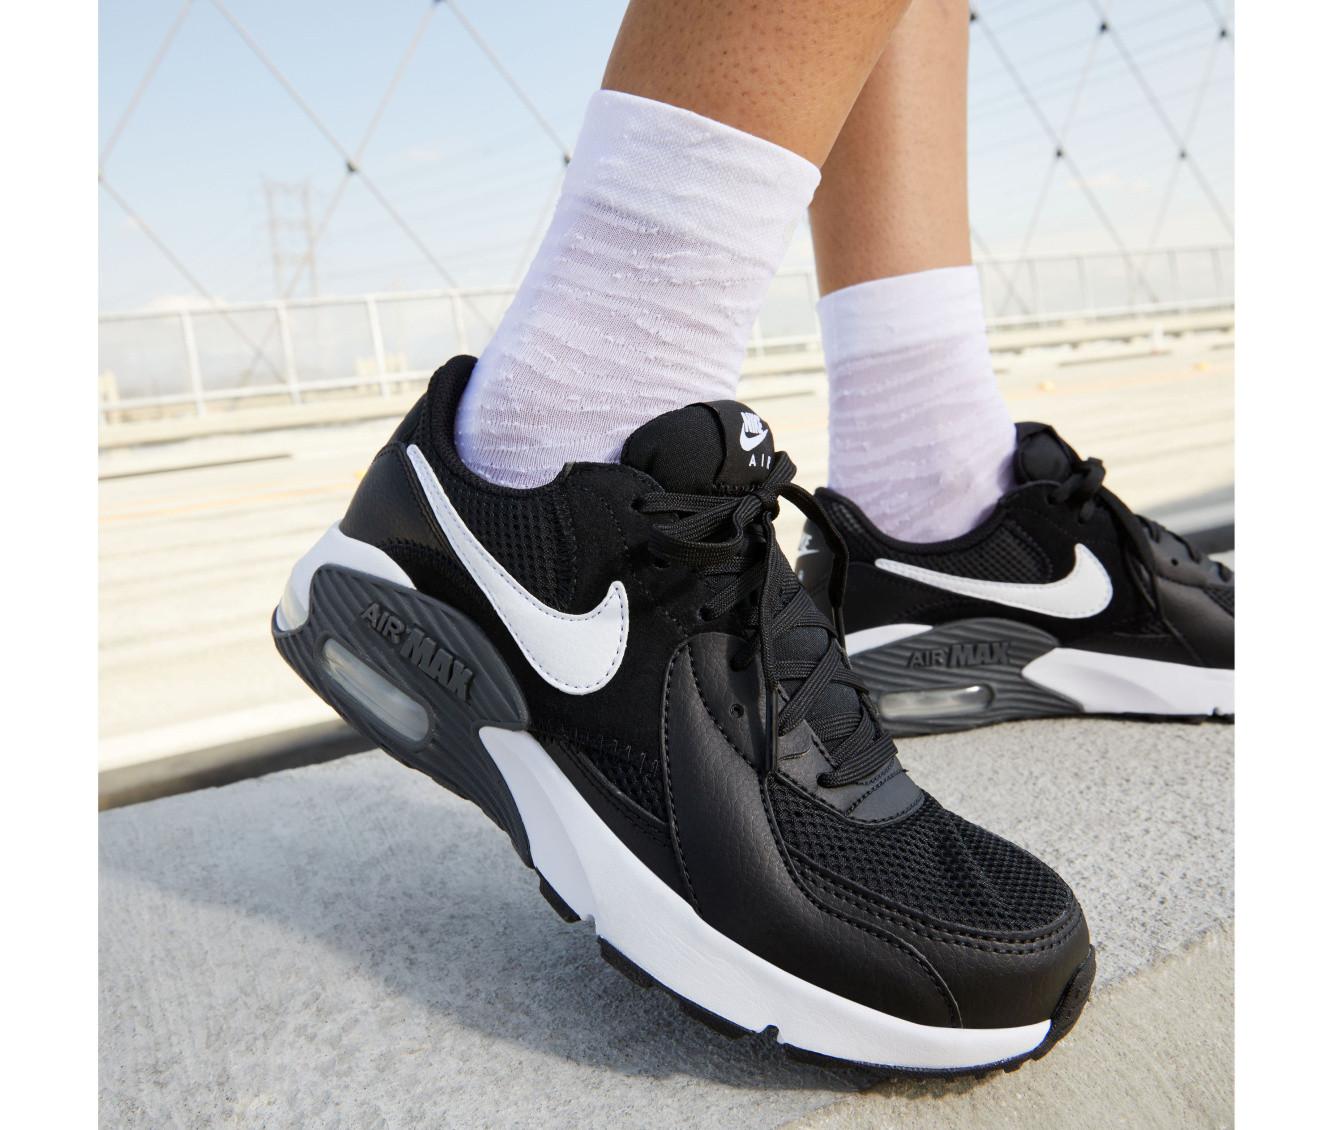 Verbanning deelnemer Plantage Women's Nike Air Max Excee Sneakers | Shoe Carnival